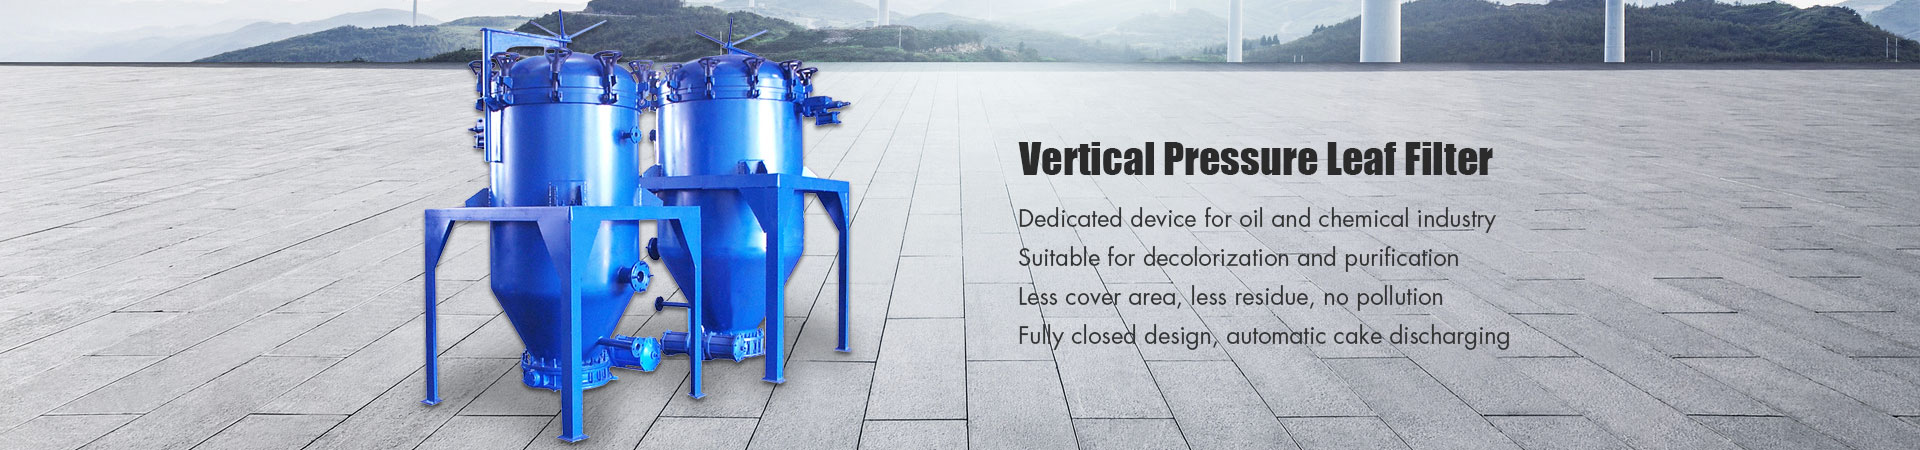 Vertical Pressure Leaf Filter